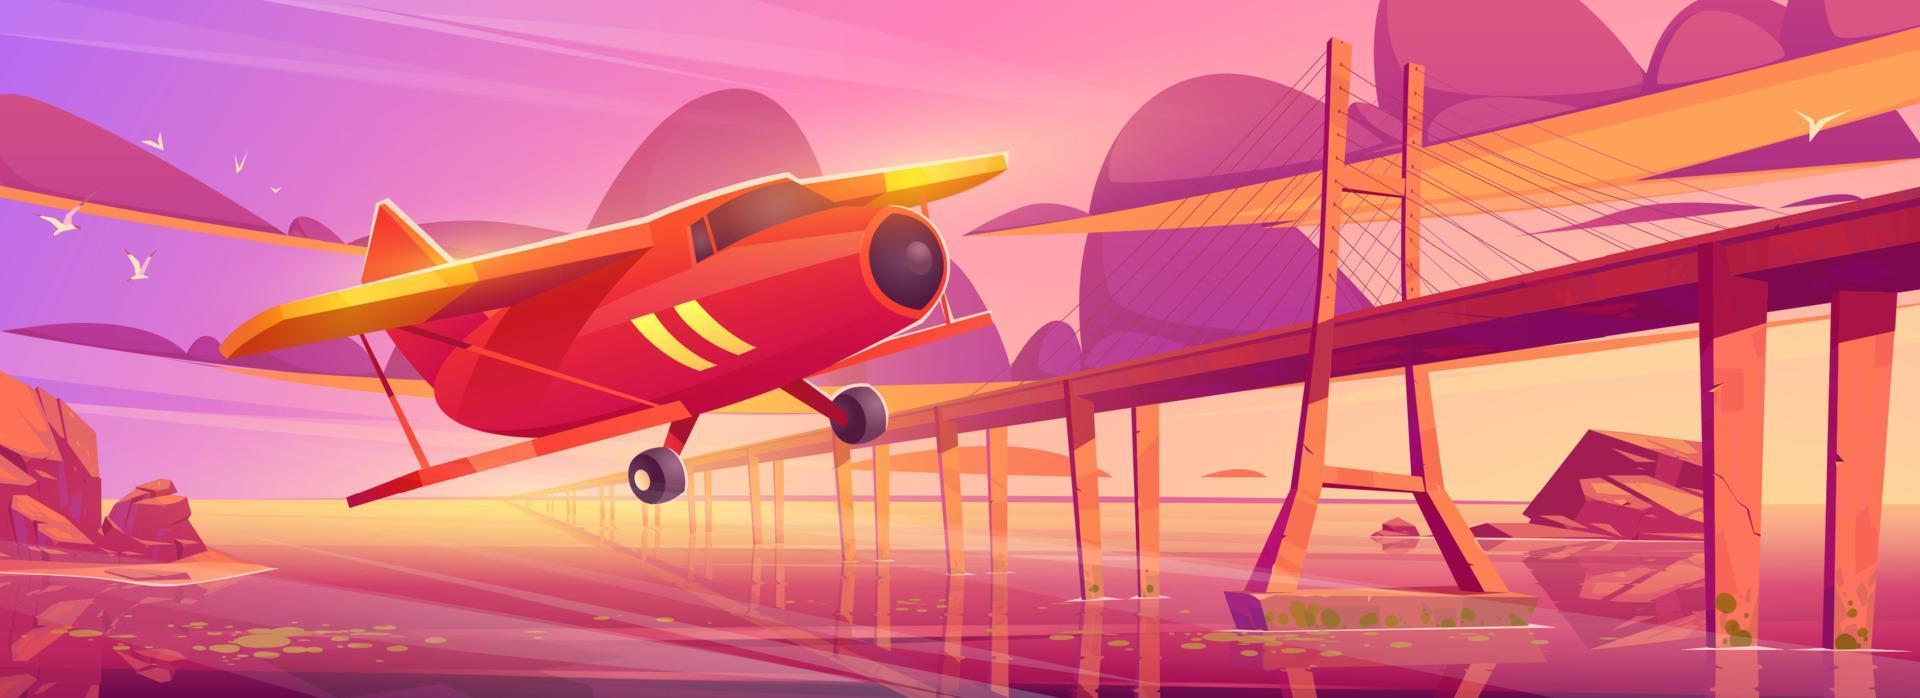 klein vliegtuig vliegend Bij zonsondergang oceaan met brug vector